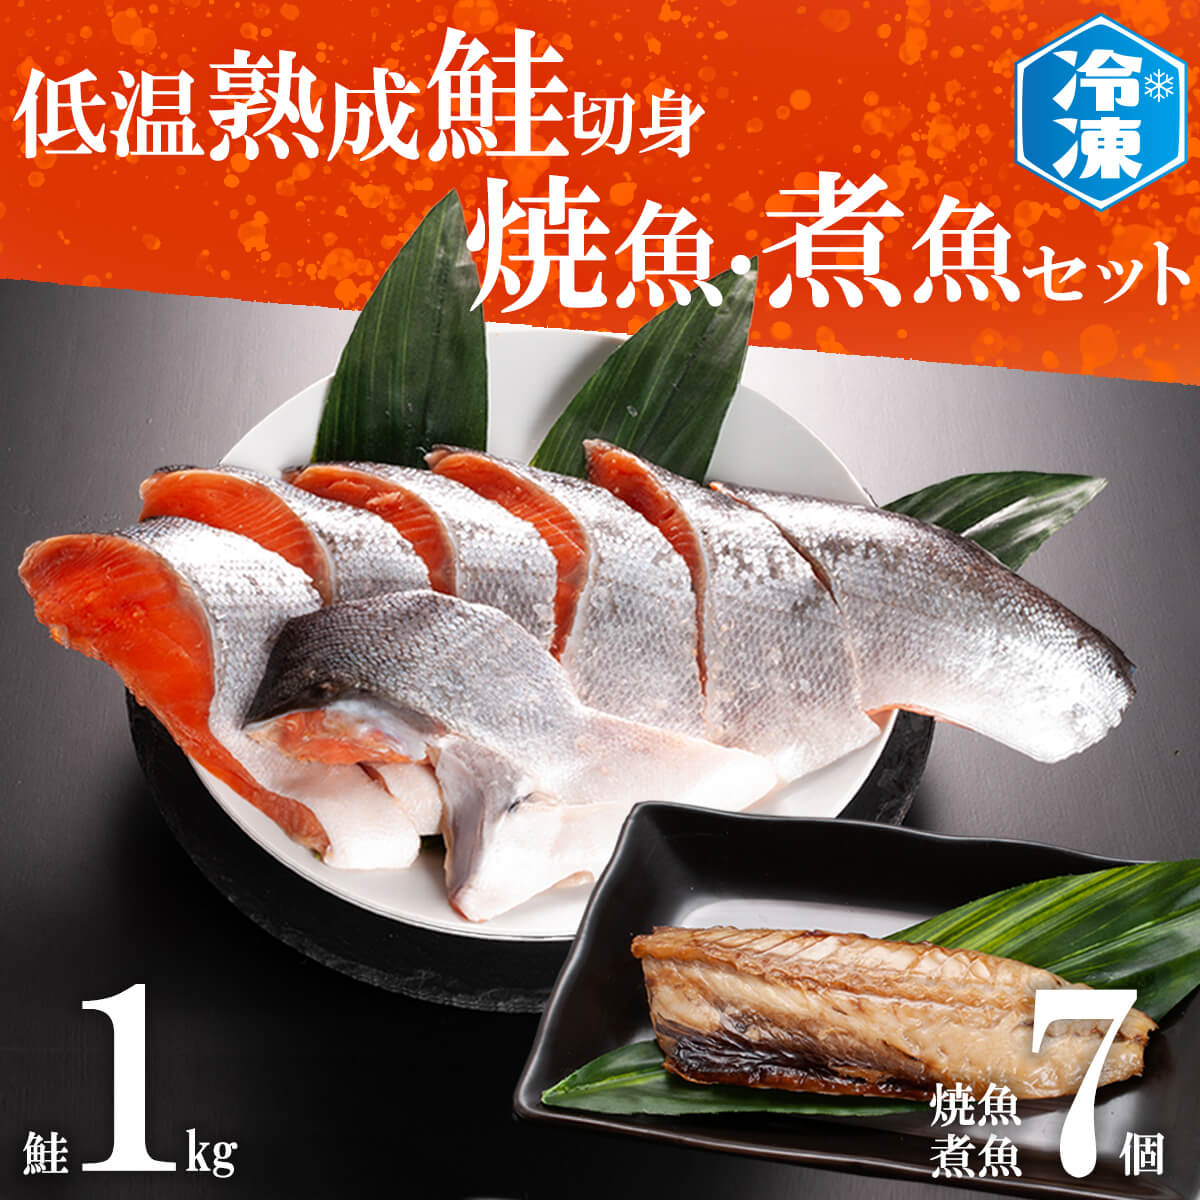 1kg　魚　焼魚　鮭　いわし　ふるさと納税　ほっけ　冷凍　さば　7パックセット　赤魚　切身（茨城県大洗町）　煮魚　さかな　切り身　低温熟成鮭切身　サイト「ふるさとプレミアム」